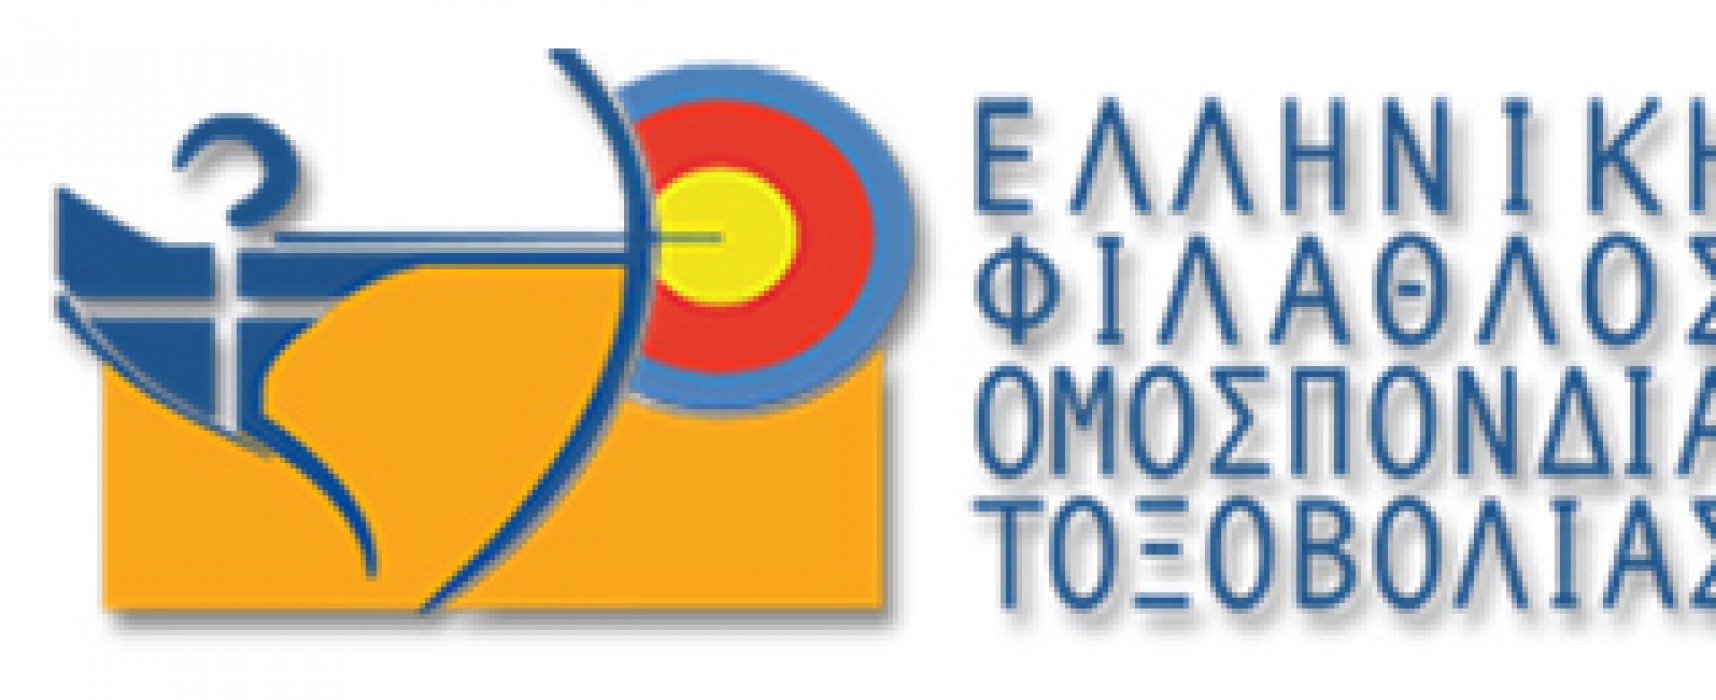 Πρόσκληση Τακτικής Γενικής Συνέλευσης της Ελληνικής Φιλάθλου Ομοσπονδίας Τοξοβολίας